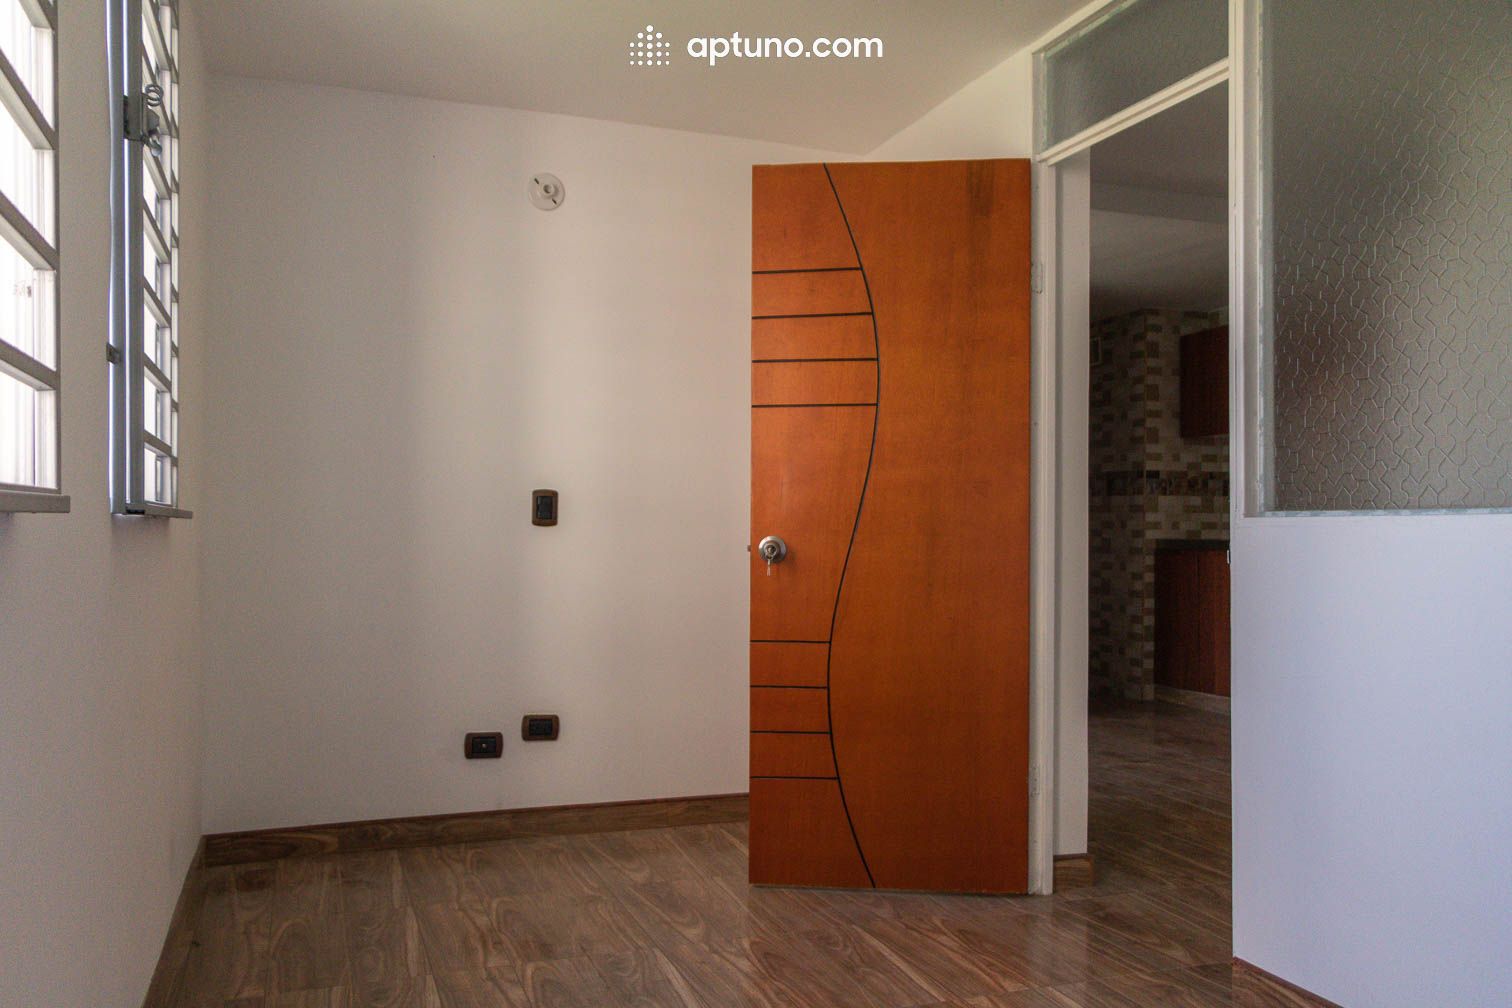 Apartamento en arriendo Santa Lucía 45 m² - $ 1.000.000,00